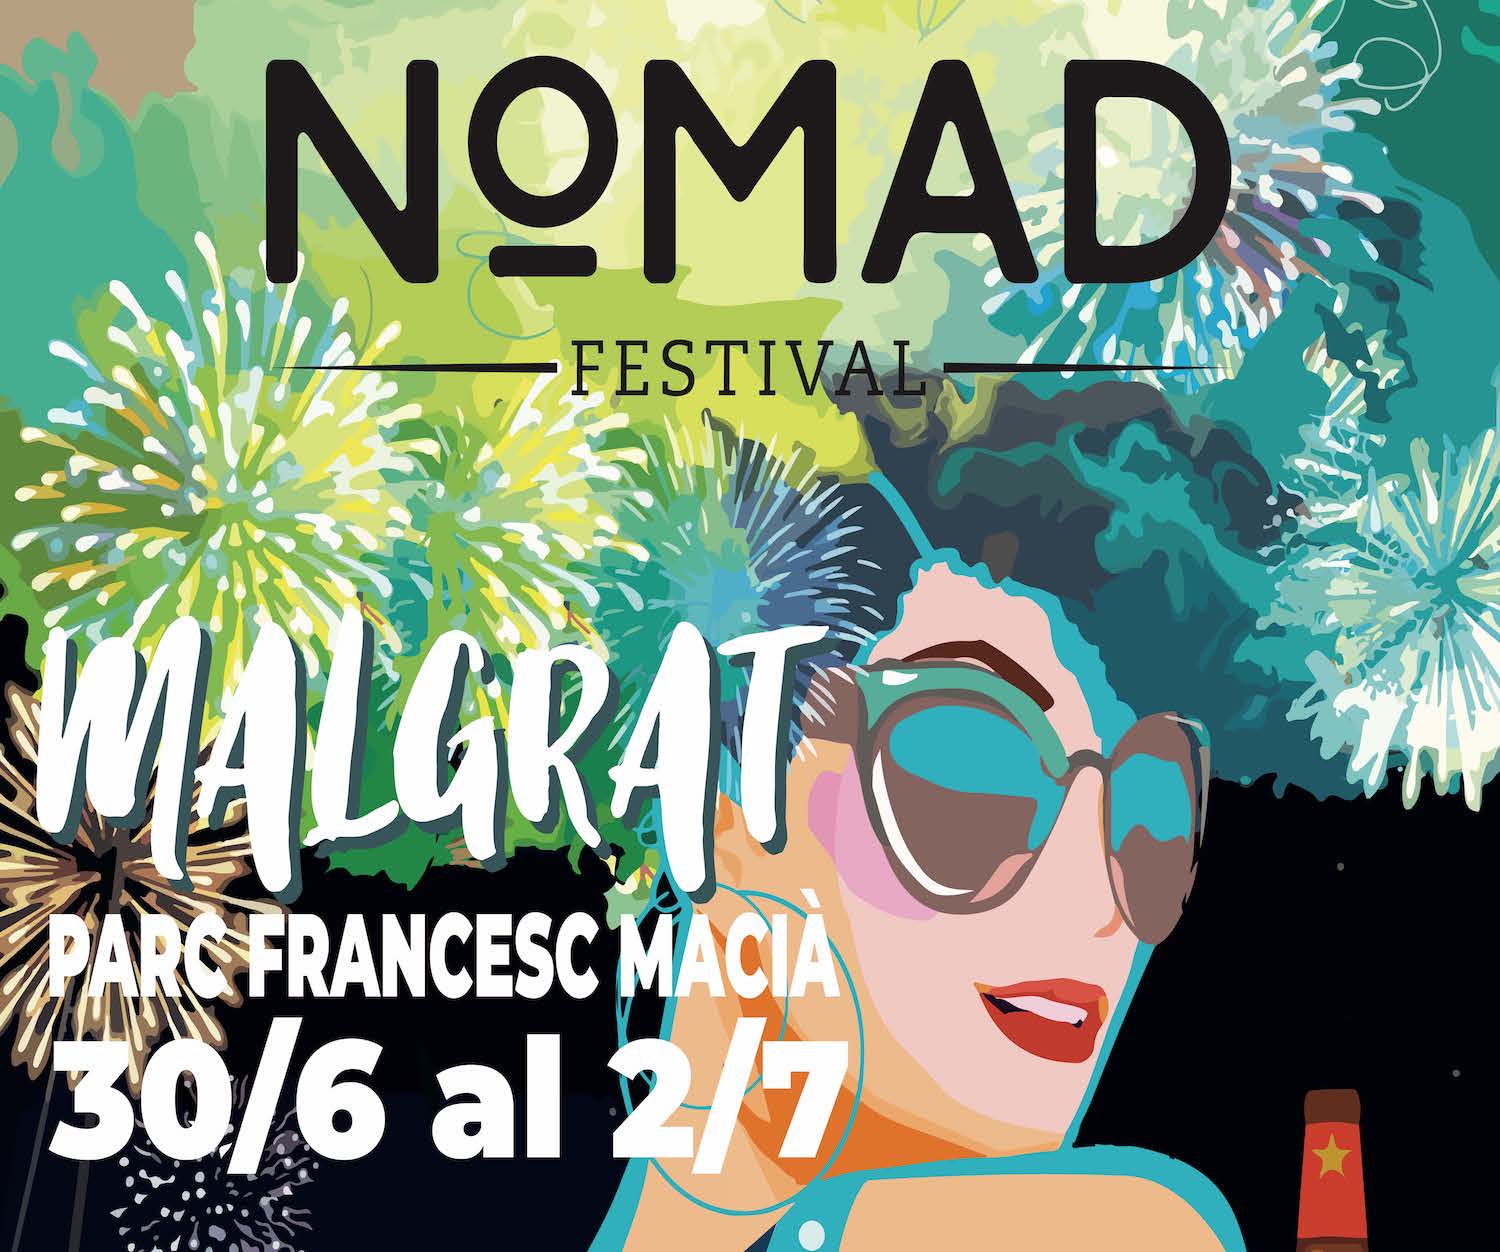 El Nomad Festival obrirà portes avui al Parc Francesc Macià fins diumenge